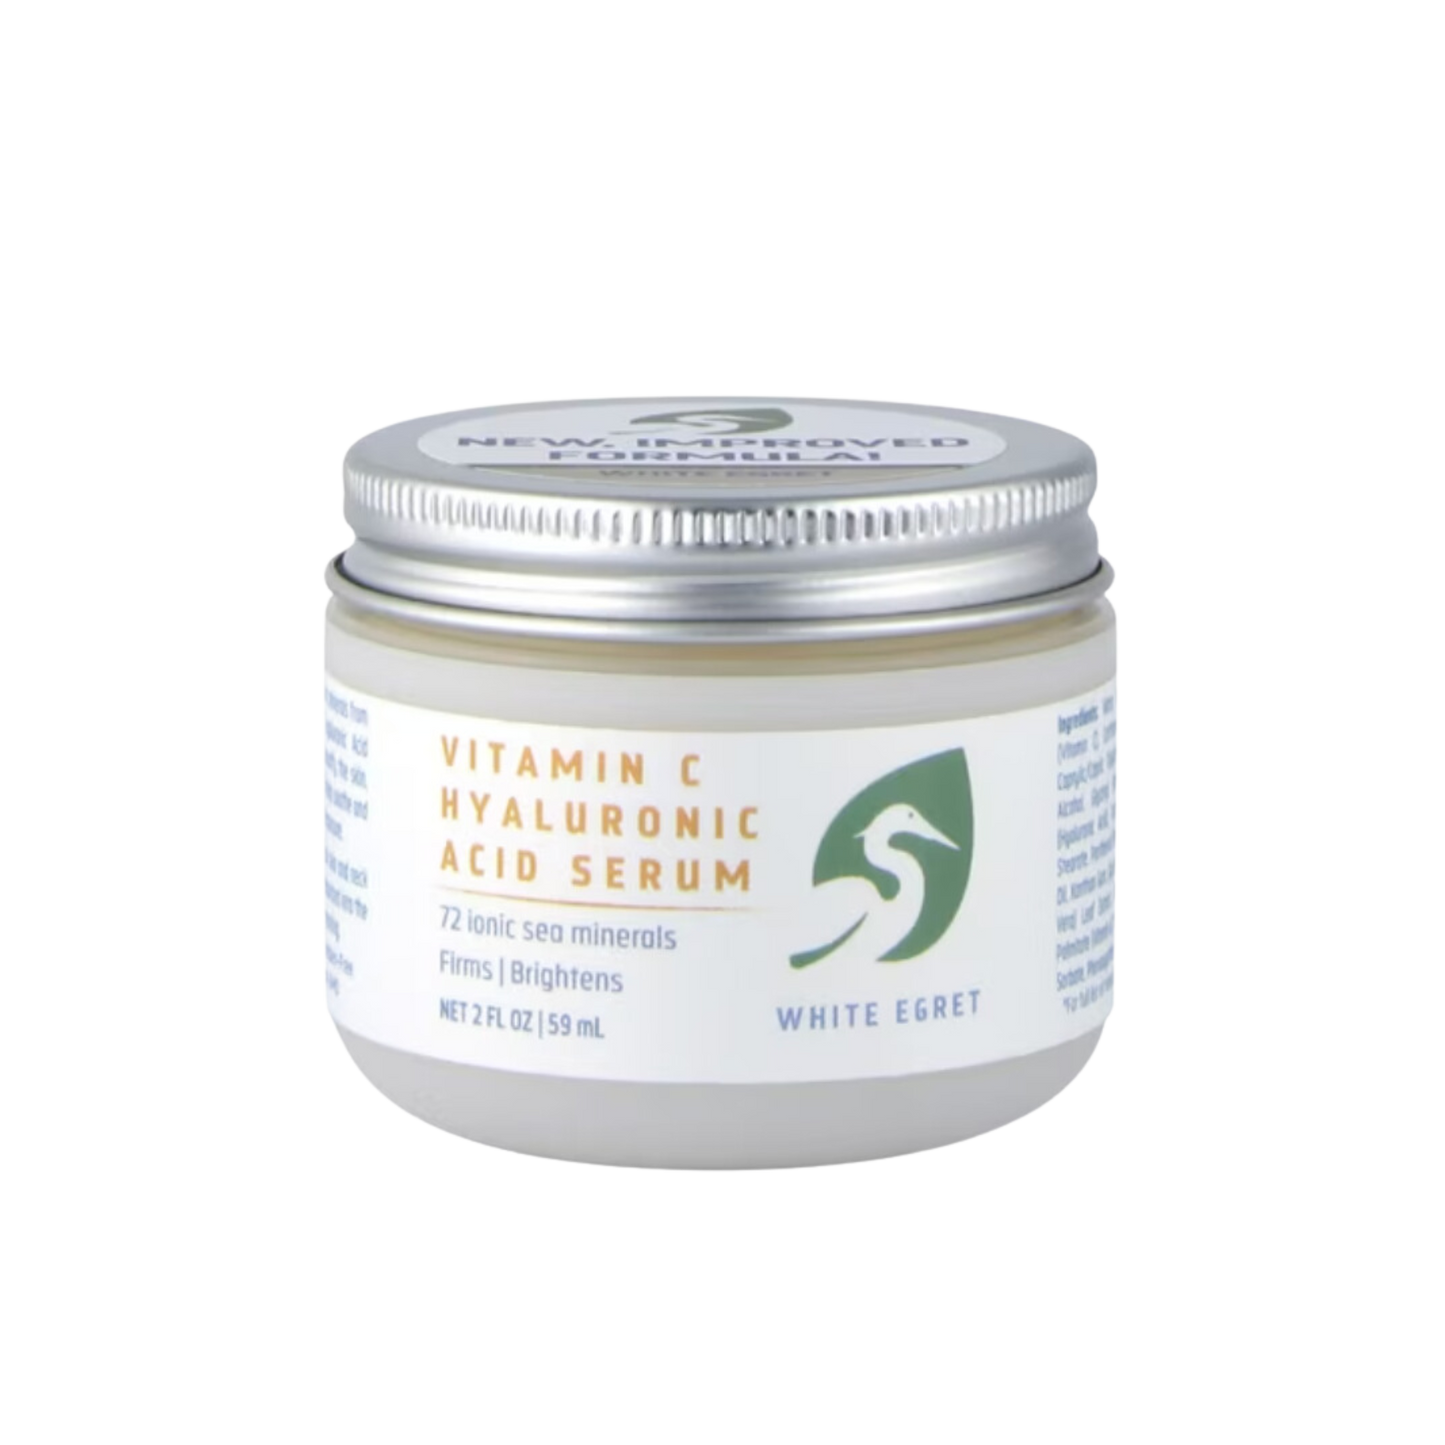 White Egret Vitamin C Hyaluronic Acid Cream